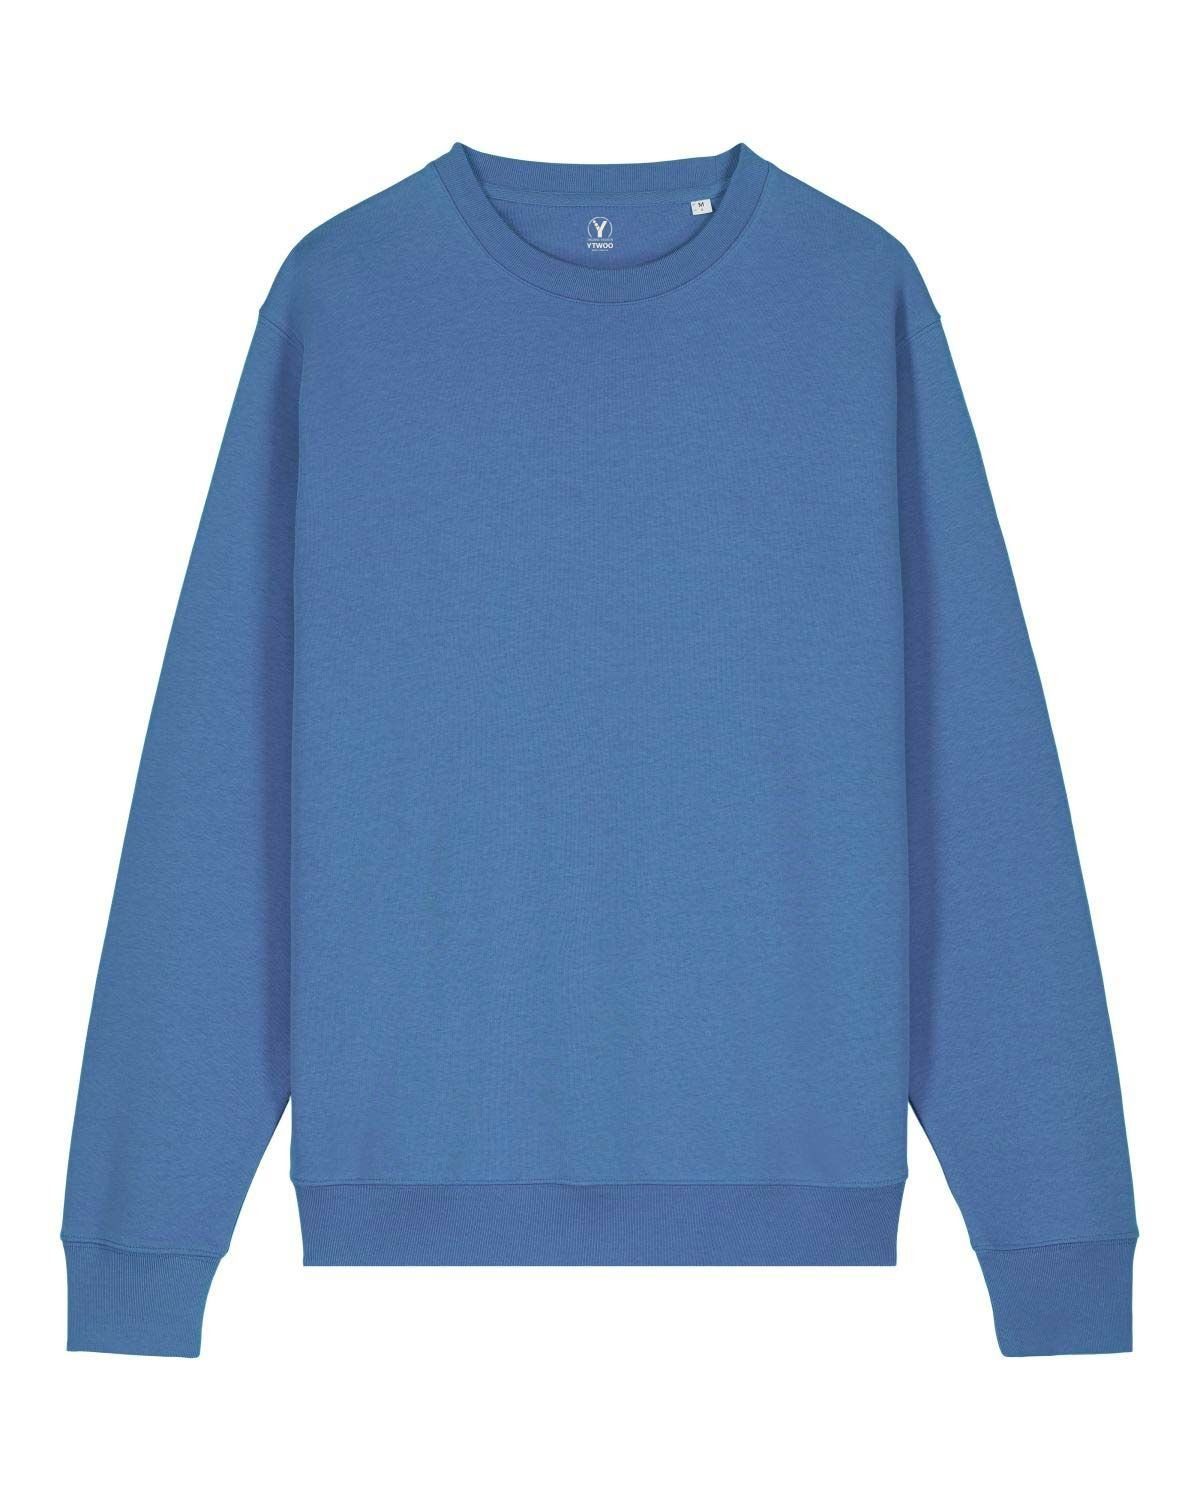 YTWOO Bright Sweatshirt Blue USW.08.BrB.2XL